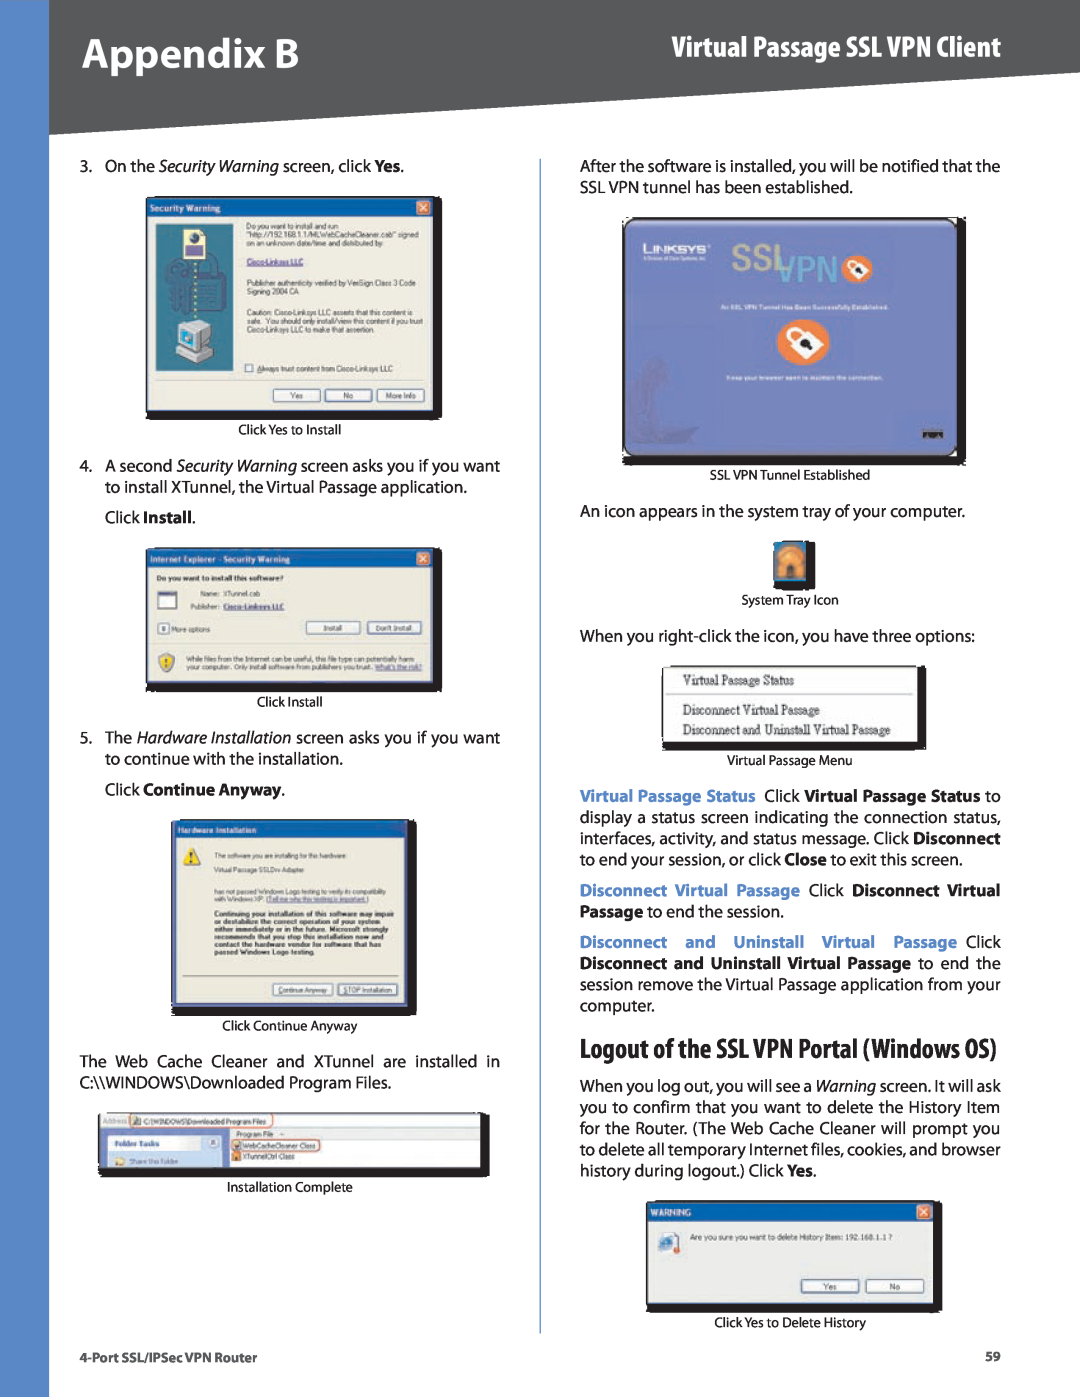 Cisco Systems RVL200 manual Logout of the SSL VPN Portal Windows OS, Click Continue Anyway, Appendix B 